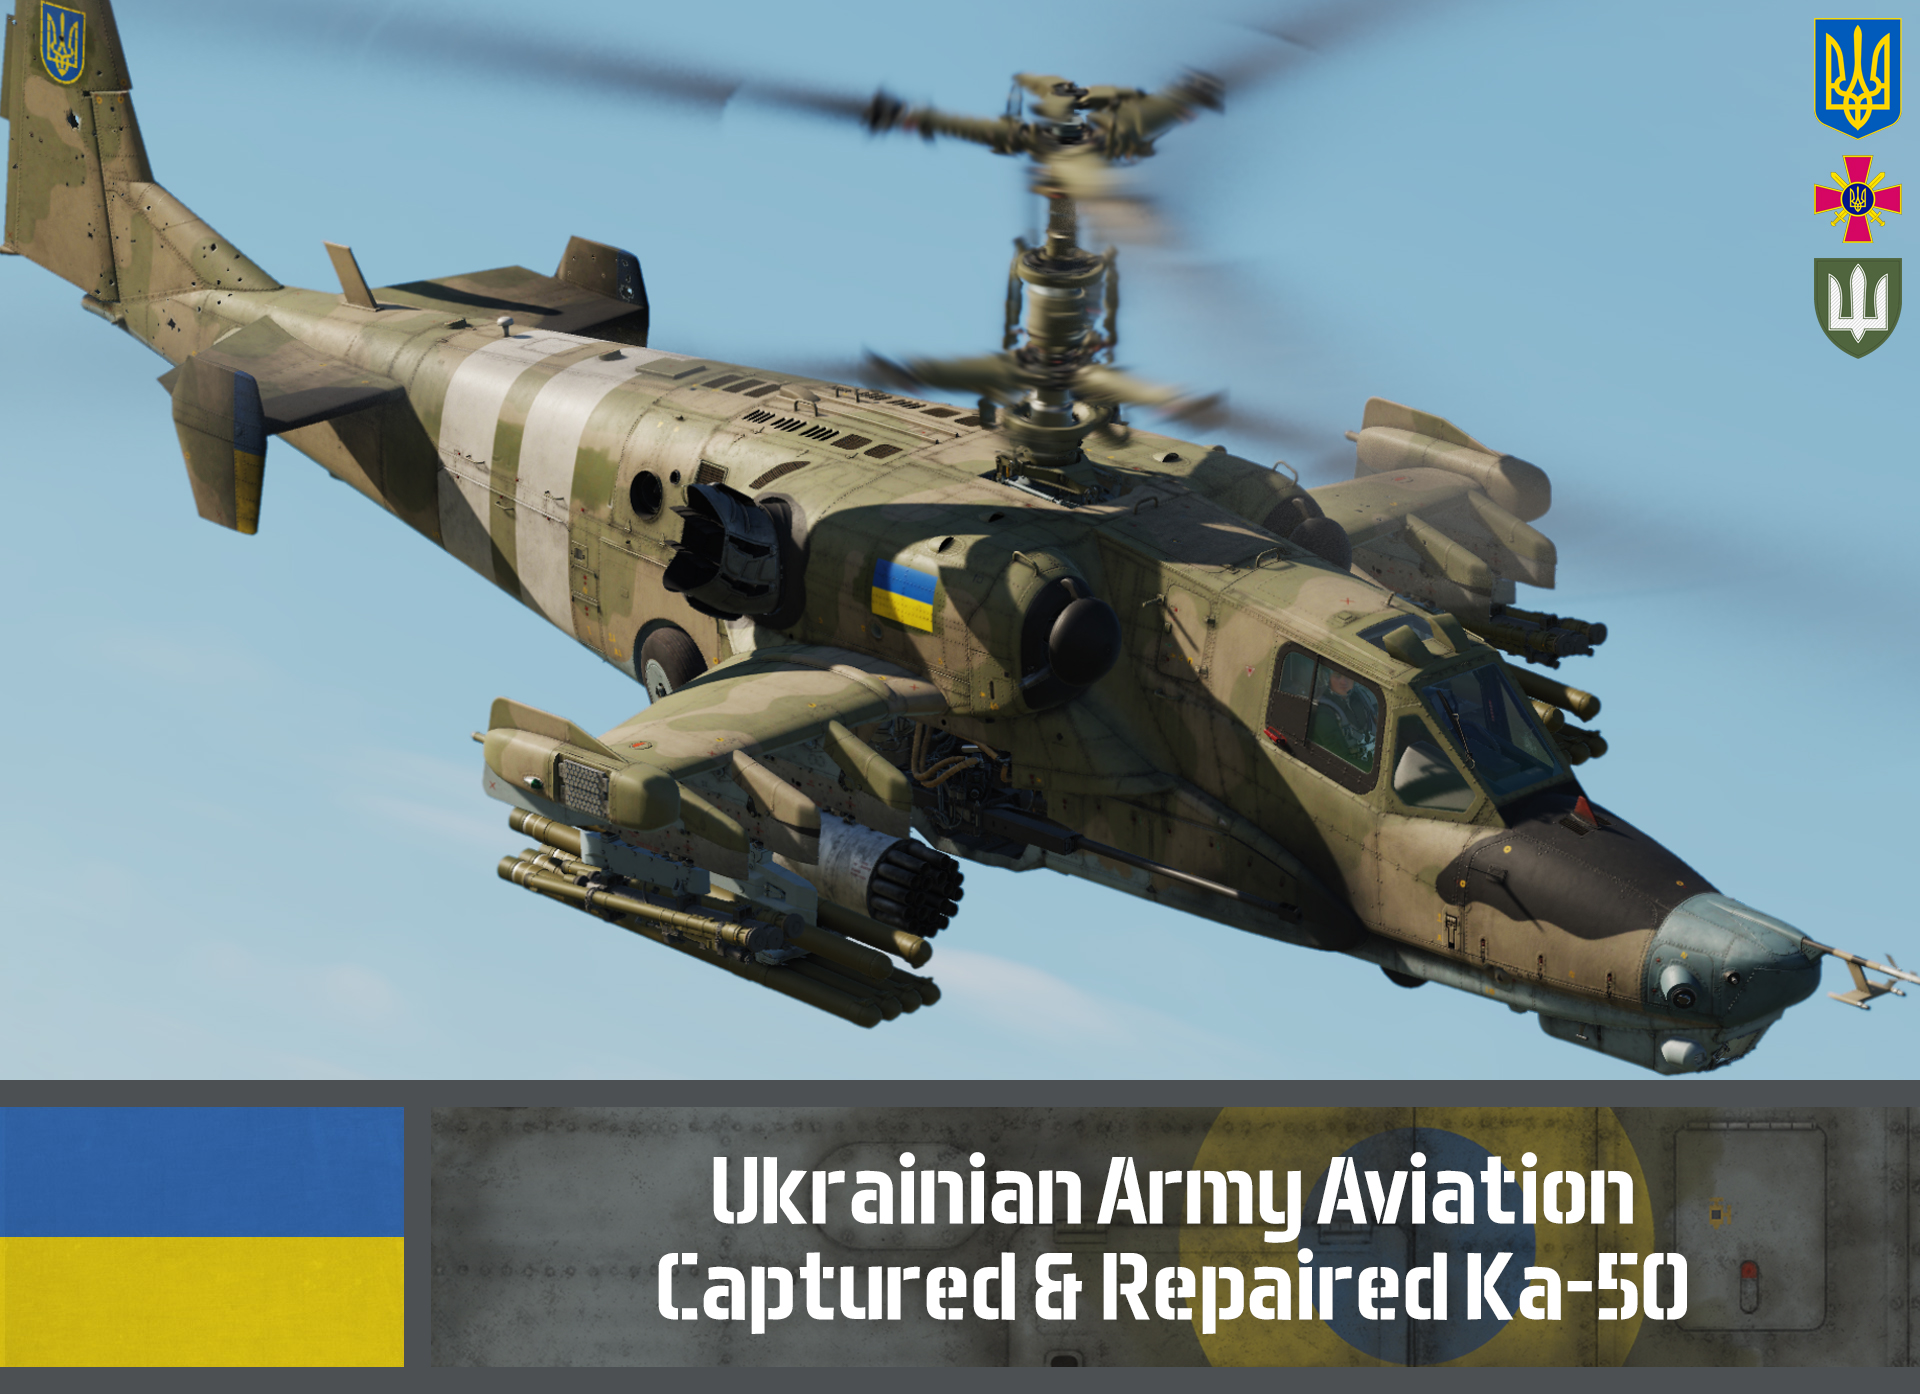 Ka-50 III - Ukrainian Army Aviation, Downed & Captured | Ukraine (Fictional)